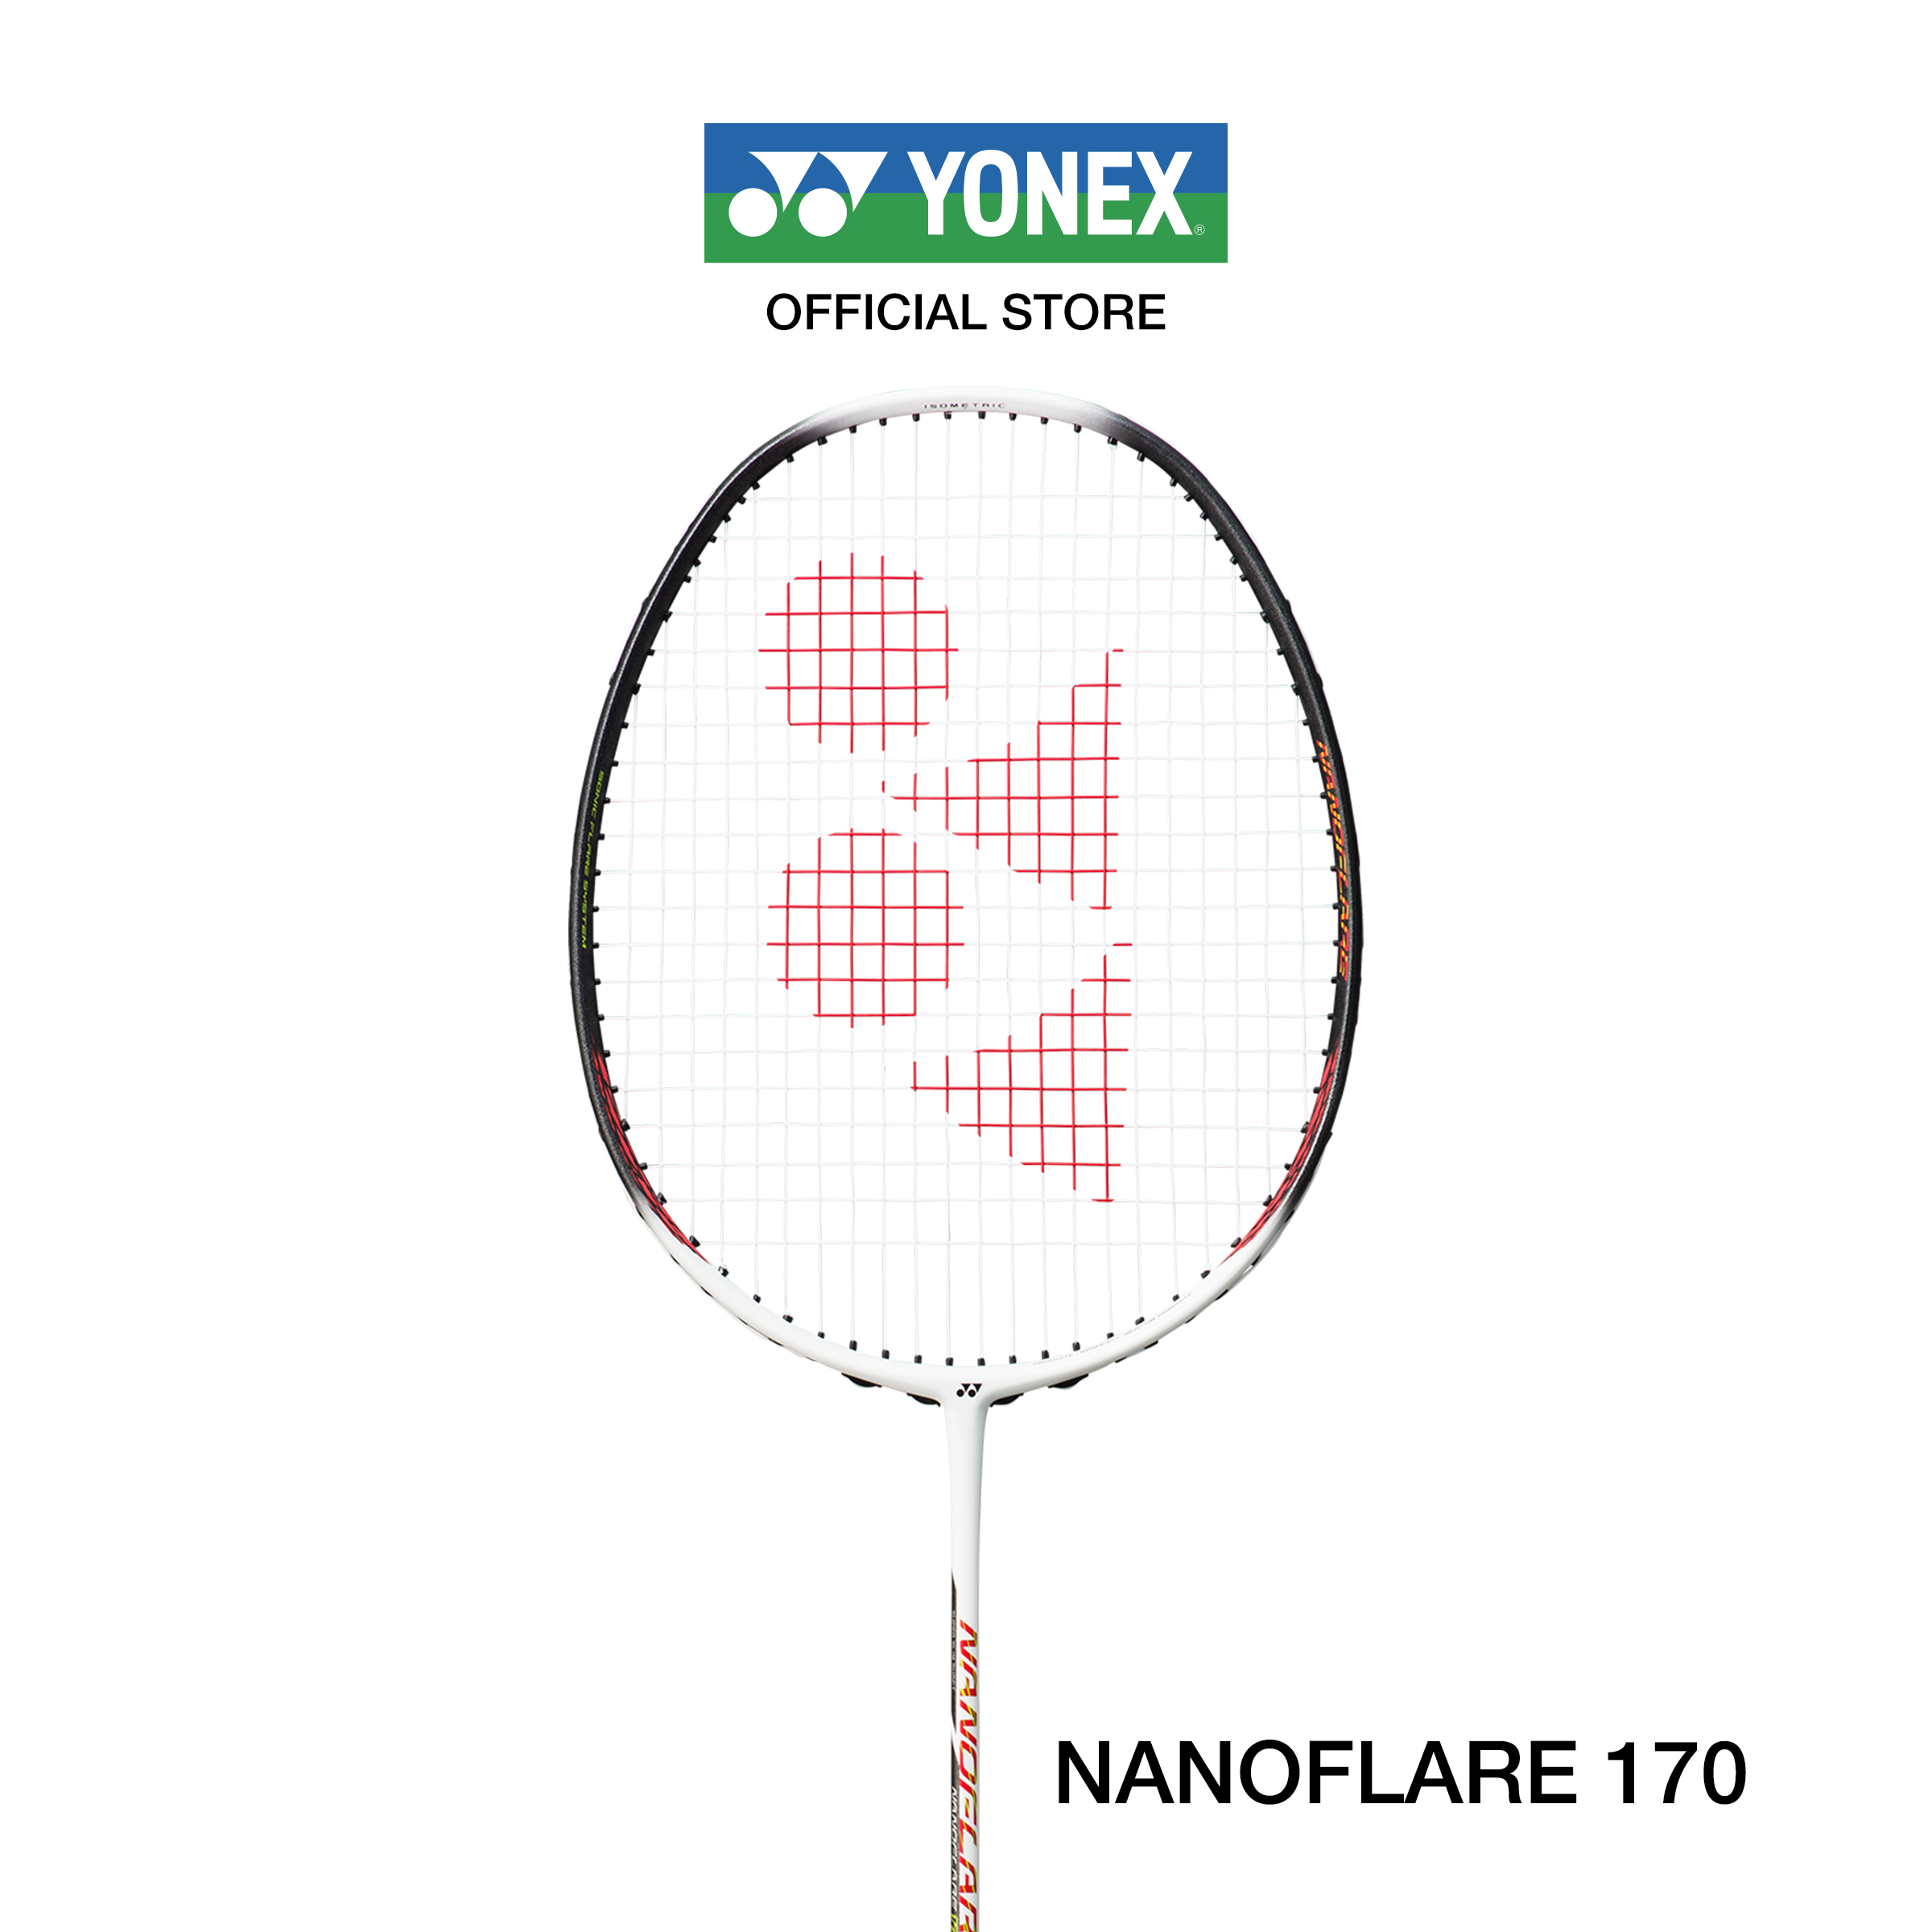 (โปรโมชั่นซื้อ1แถม1 คละสี )  YONEX ไม้แบดมินตัน รุ่น NANOFLARE 170 น้ำหนัก 78g (5U G5)  ไม้หัวเบา ก้านอ่อน (ไม้เปล่าไม่มีเอ็นแถม)